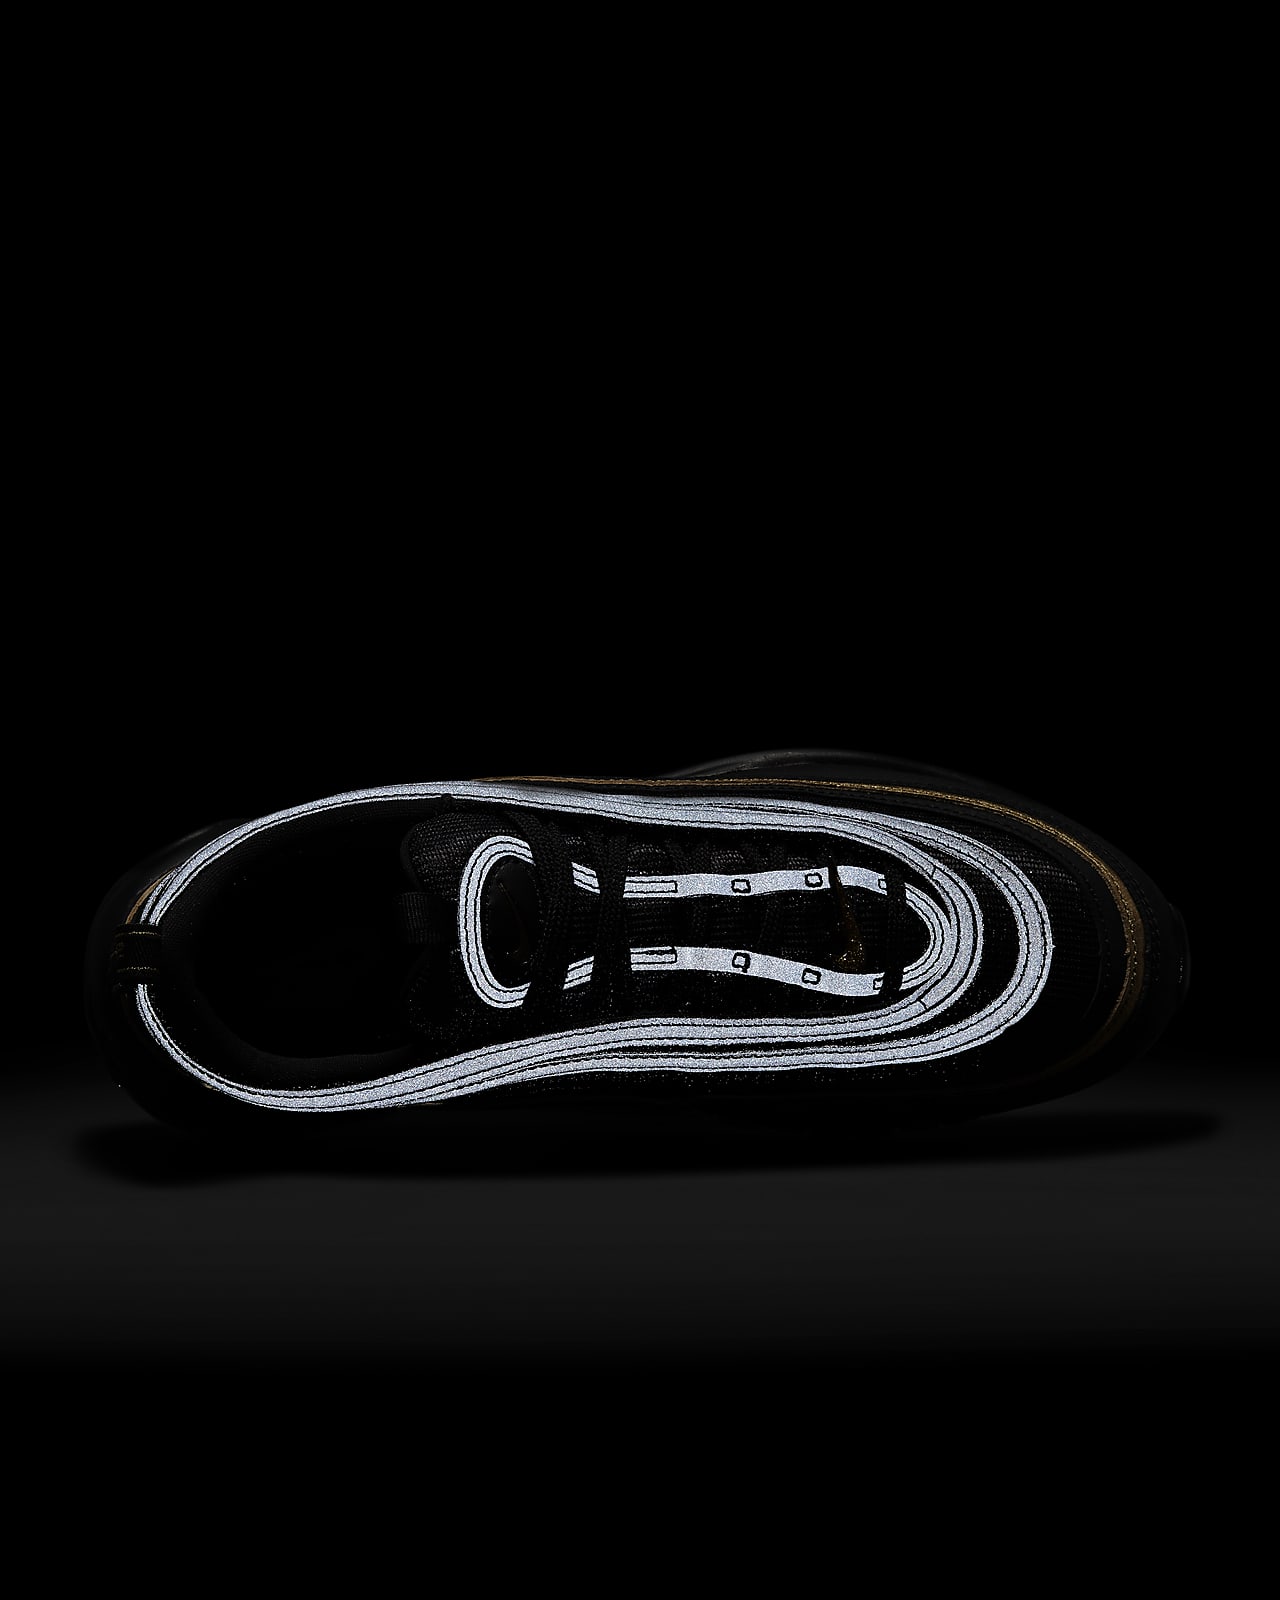 Nike Air Max 97 Sneakers - Black for Men